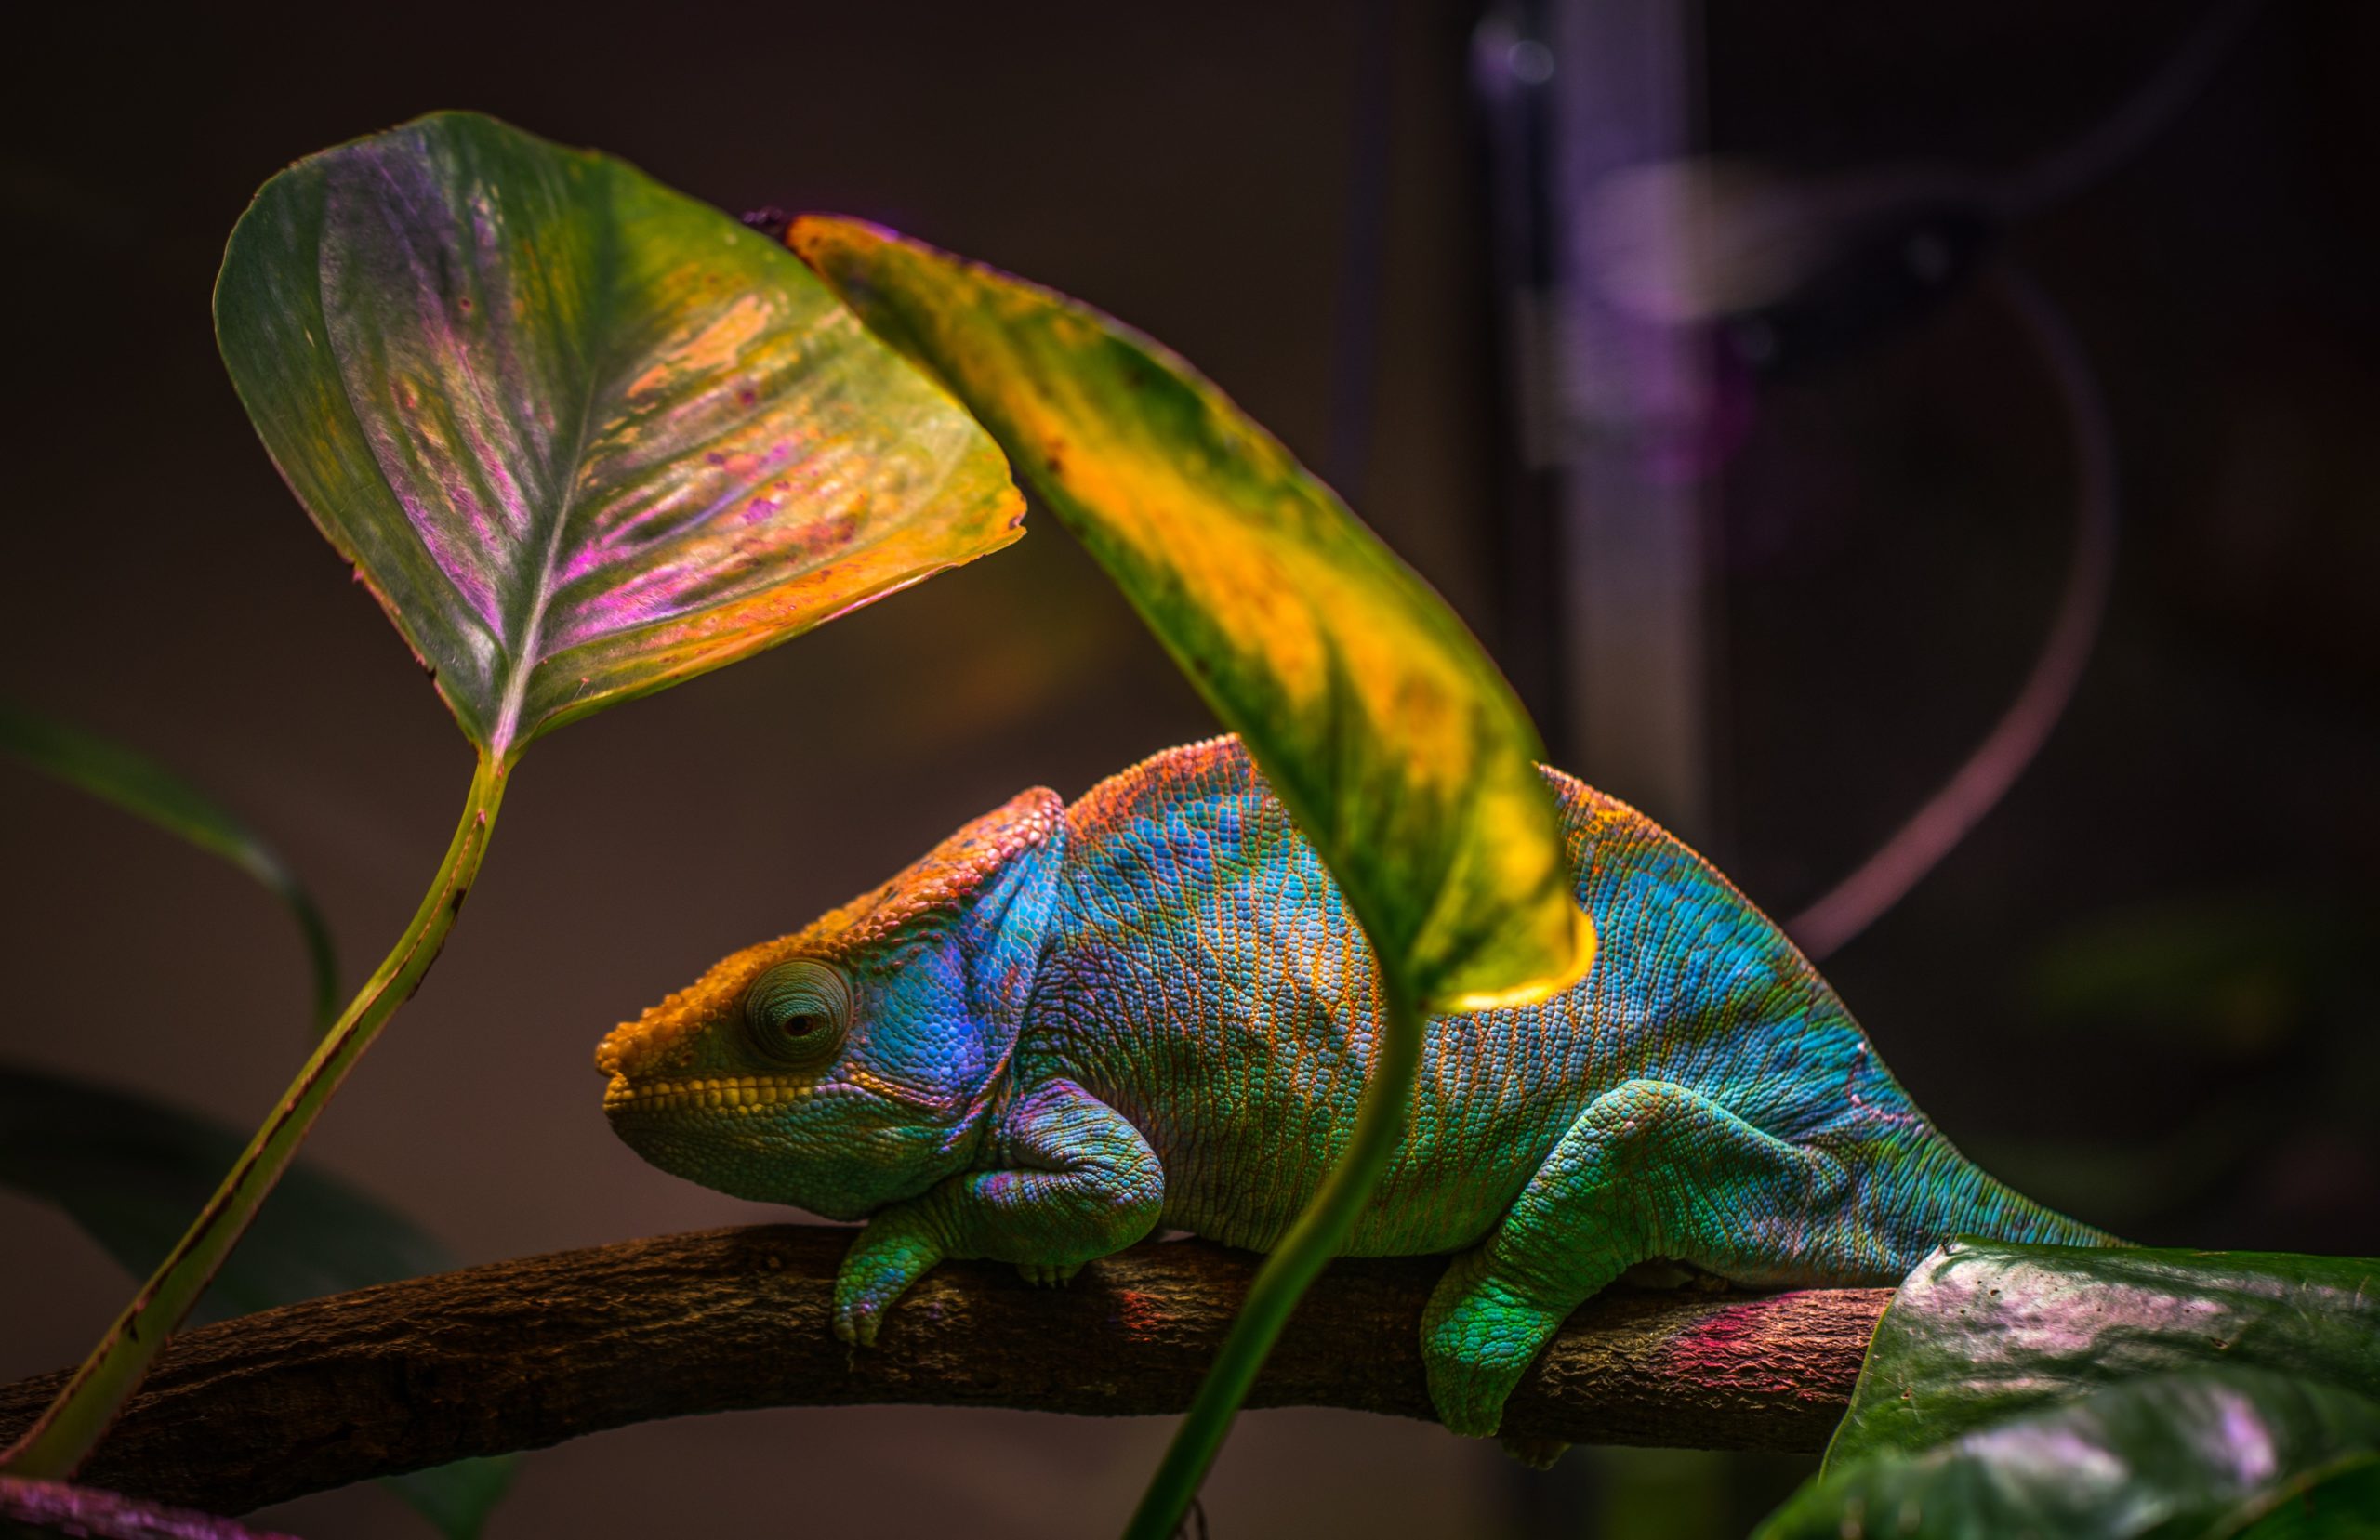 Chameleon in Planted Terrarium